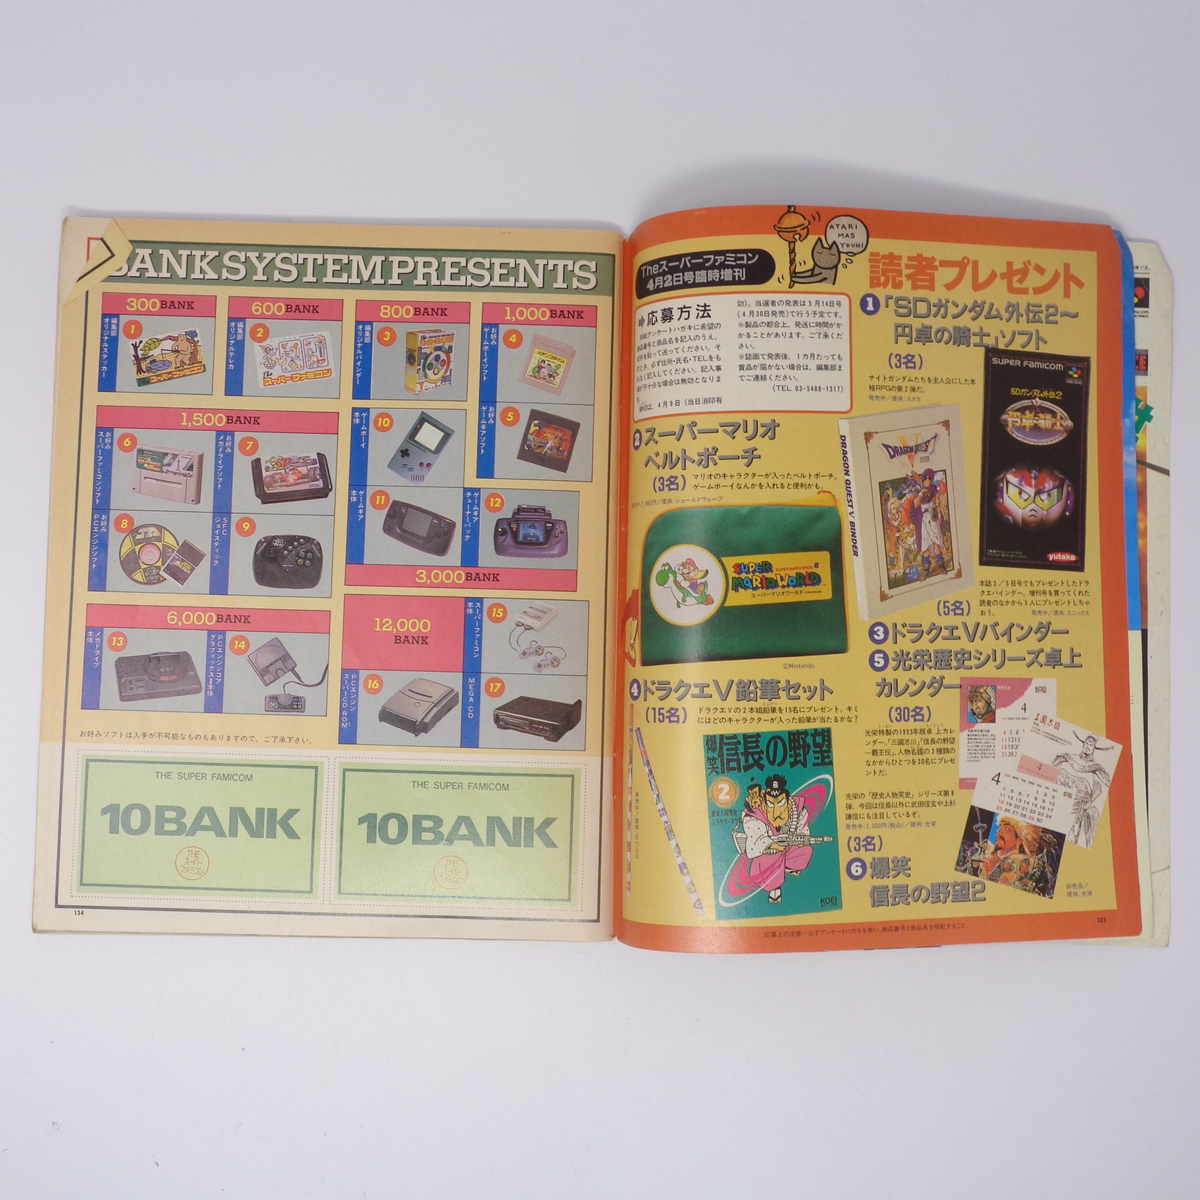 The SuperFamicom 1993年4月2日臨時増刊号 NO.2 別冊付録無し /スターフォックス/Theスーパーファミコン/ゲーム雑誌[Free Shipping]_画像7